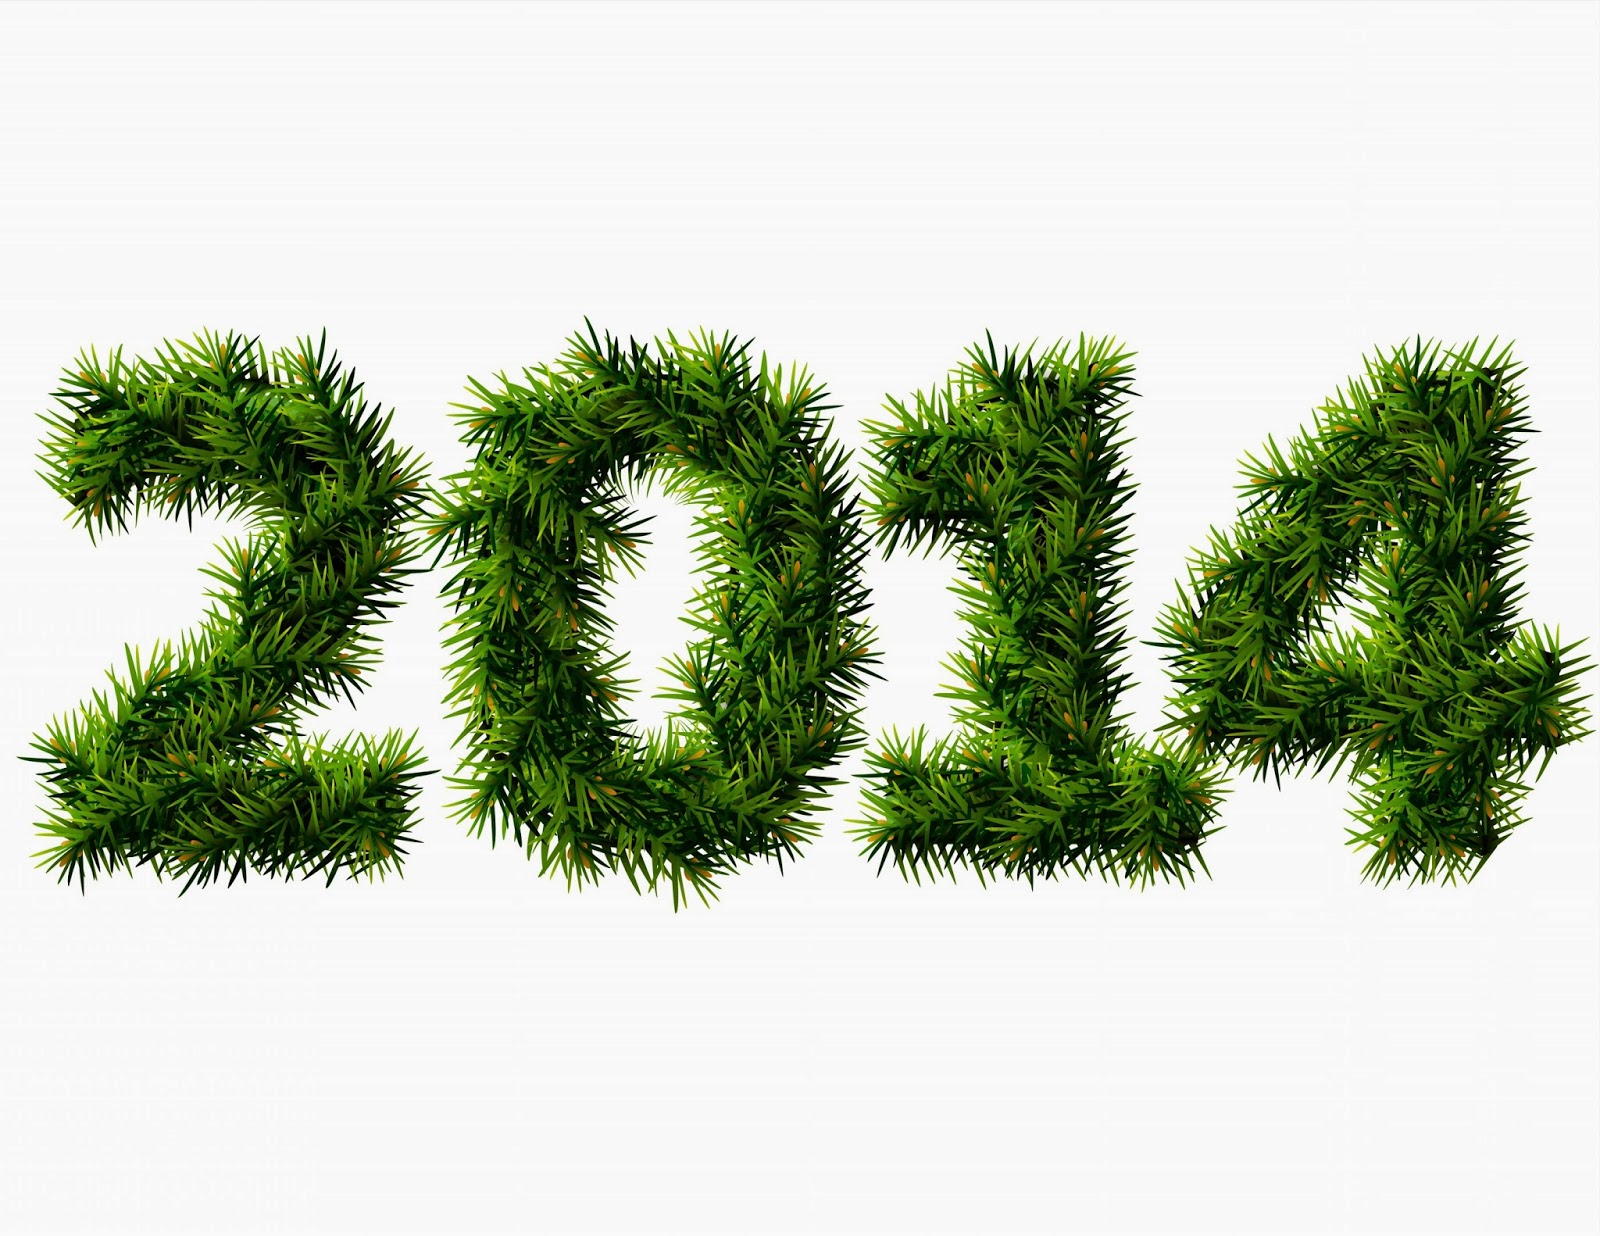 ... New year 2014 grass wallpaper Zarif Yeni Yıl 2014 Duvar Kağıtları